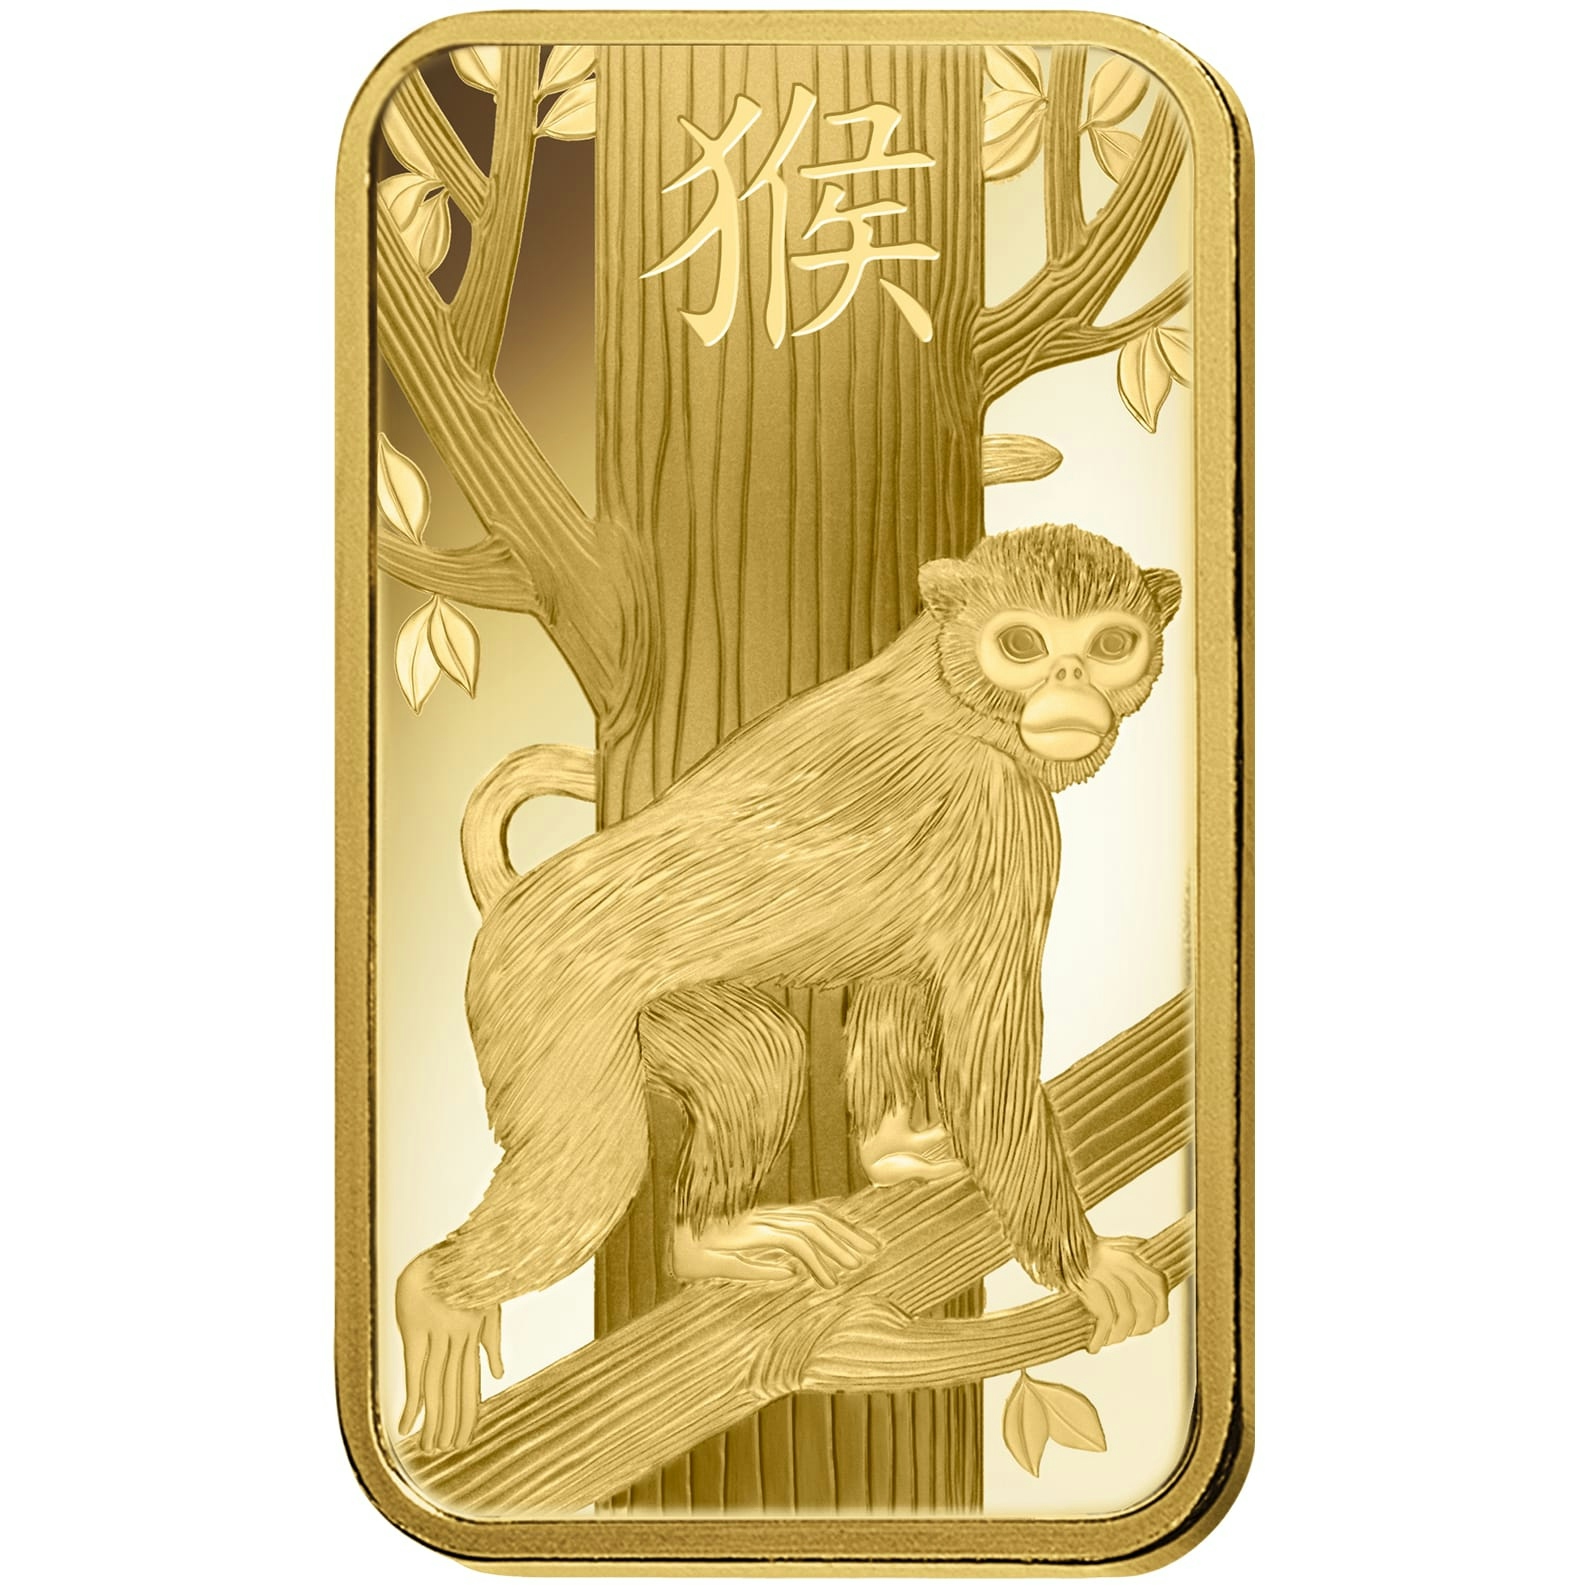 Die Rückseite des PAMP Suisse Lunar Monkey Goldbarrens